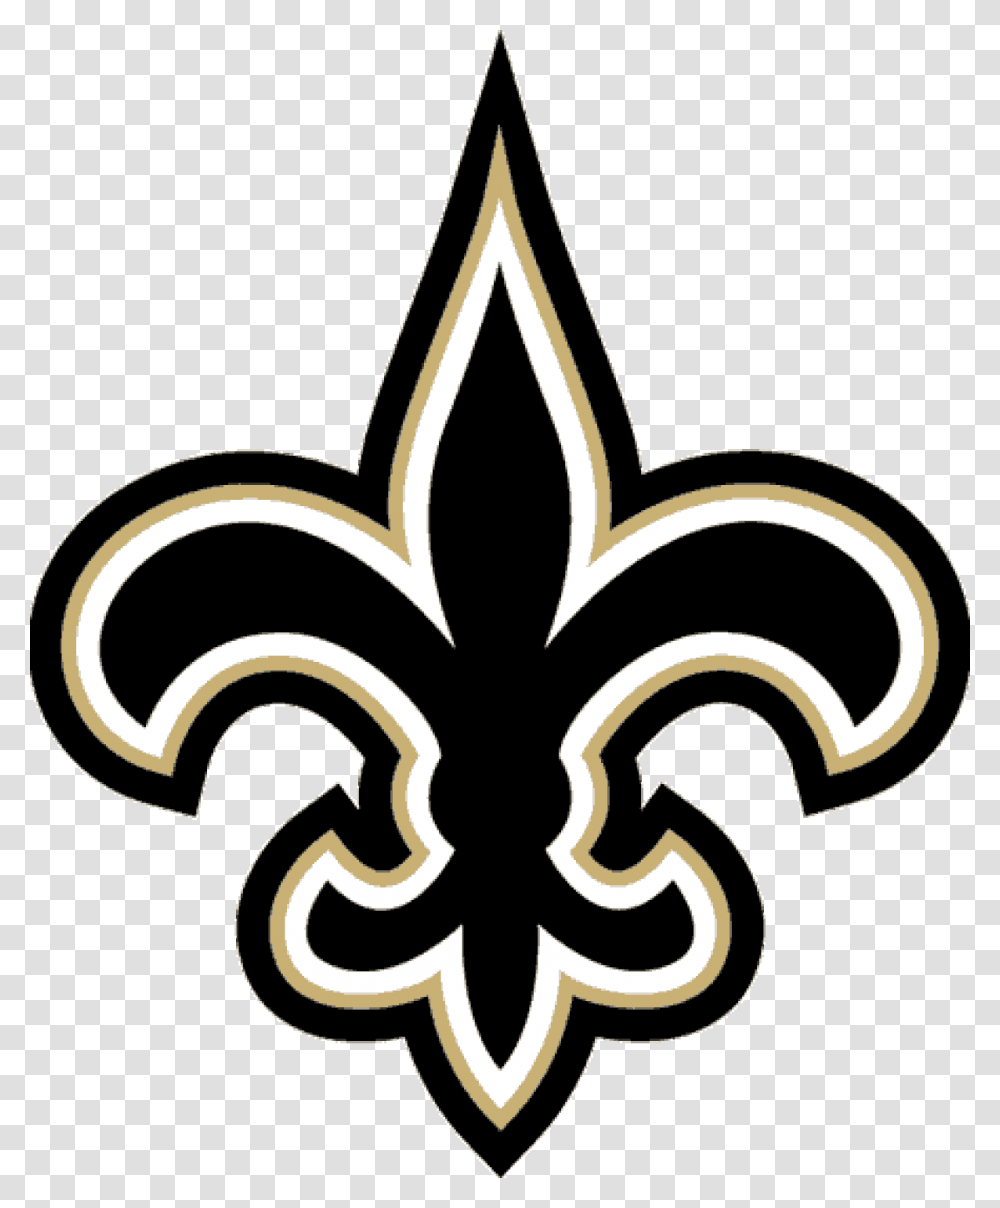 2011 New Orleans Saints Season New Orleans Saints Logo, Lawn Mower, Tool, Emblem Transparent Png